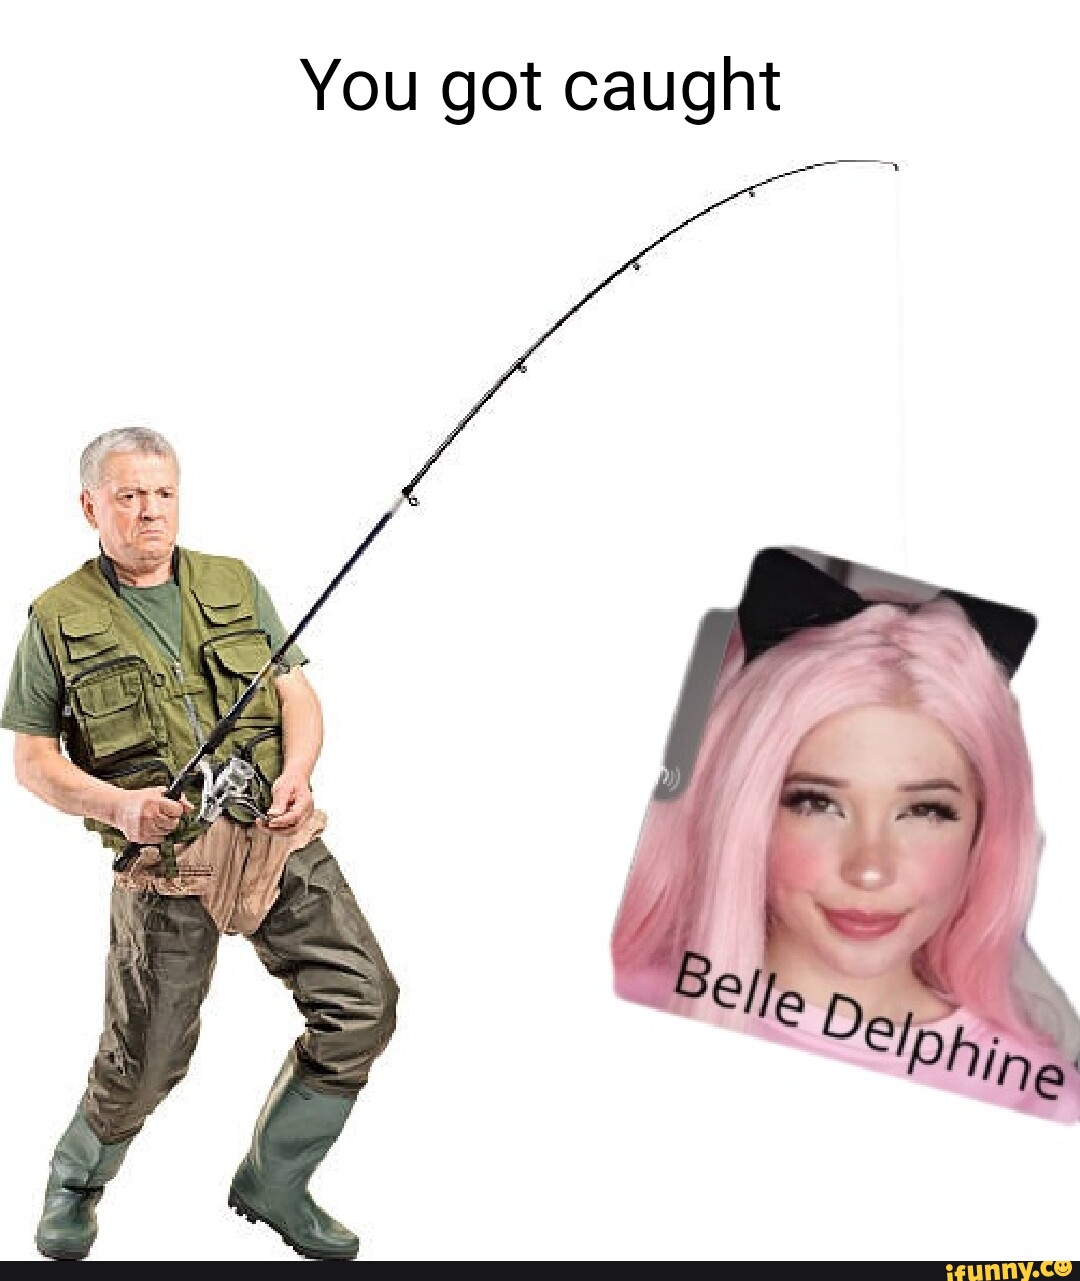 Belle delphine masturbates